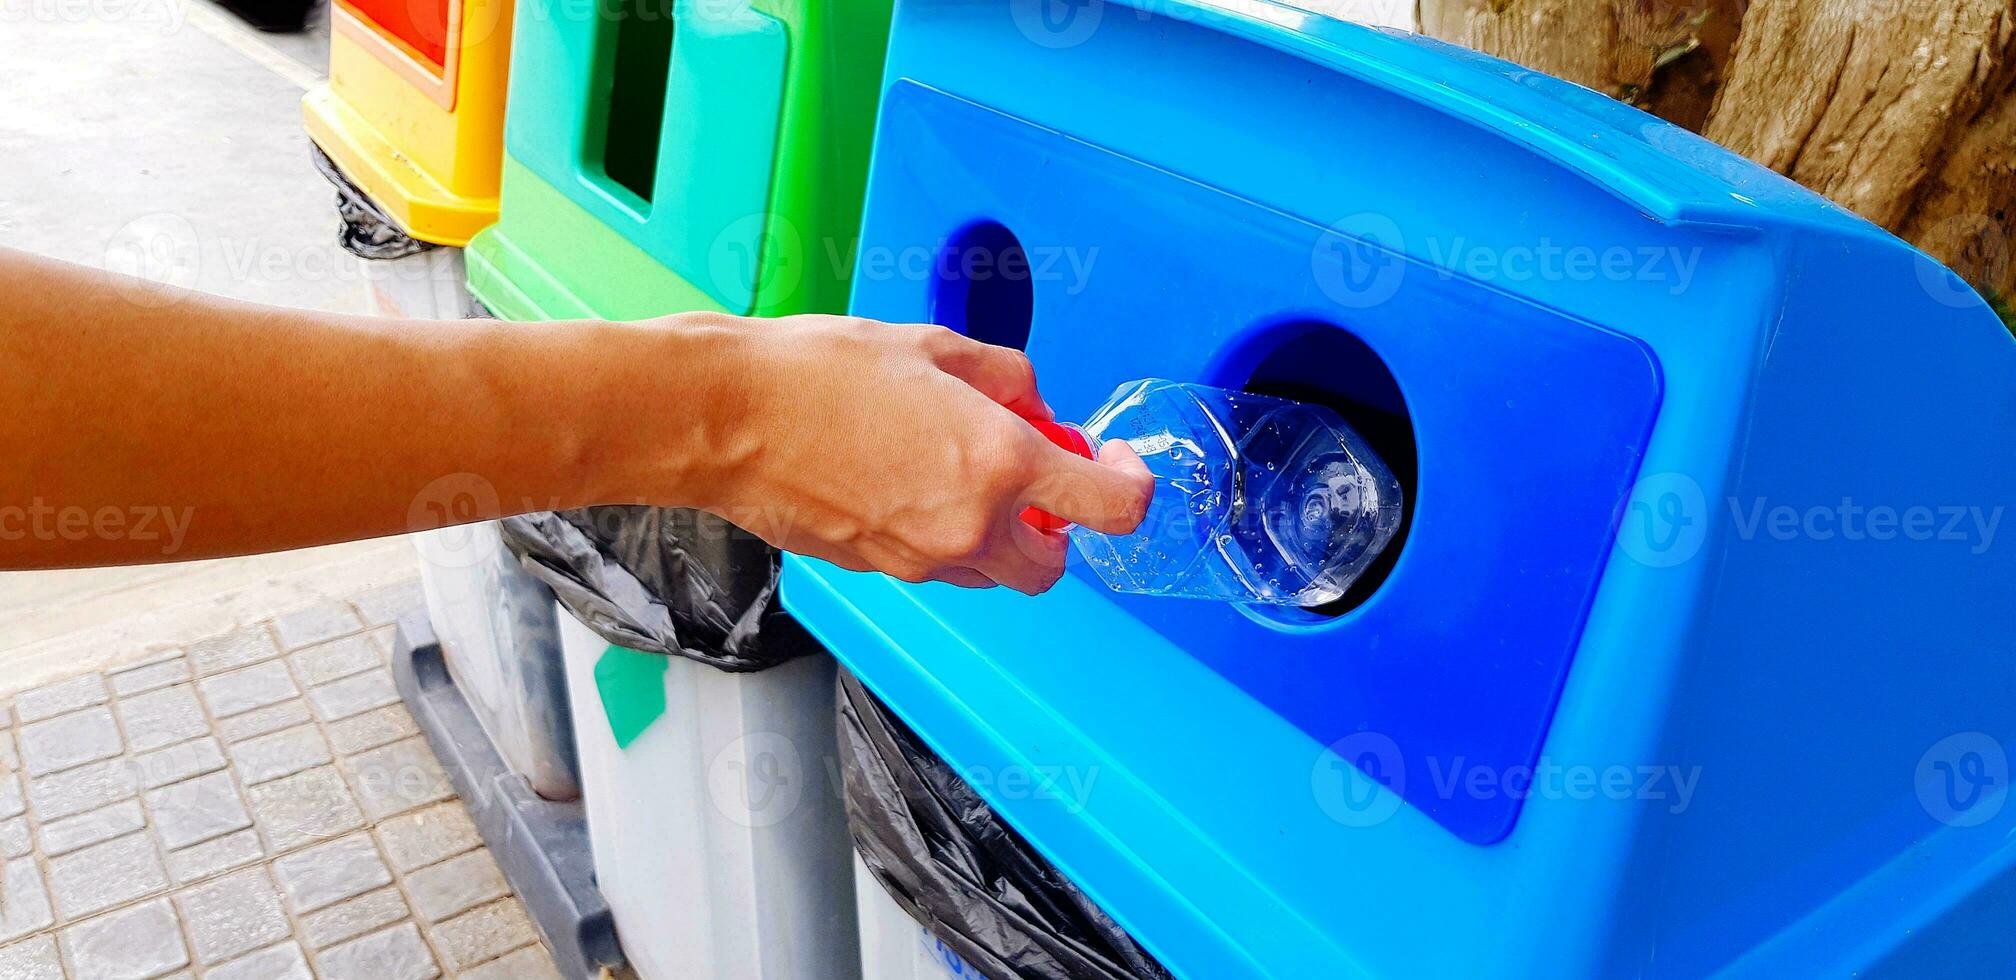 dichtbij omhoog vrouw hand- Holding en dumping plastic fles van water in blauw recycle bak, prullenbak of afval. schoonmaak Oppervlakte en recycling gebruikt met kopiëren ruimte. foto